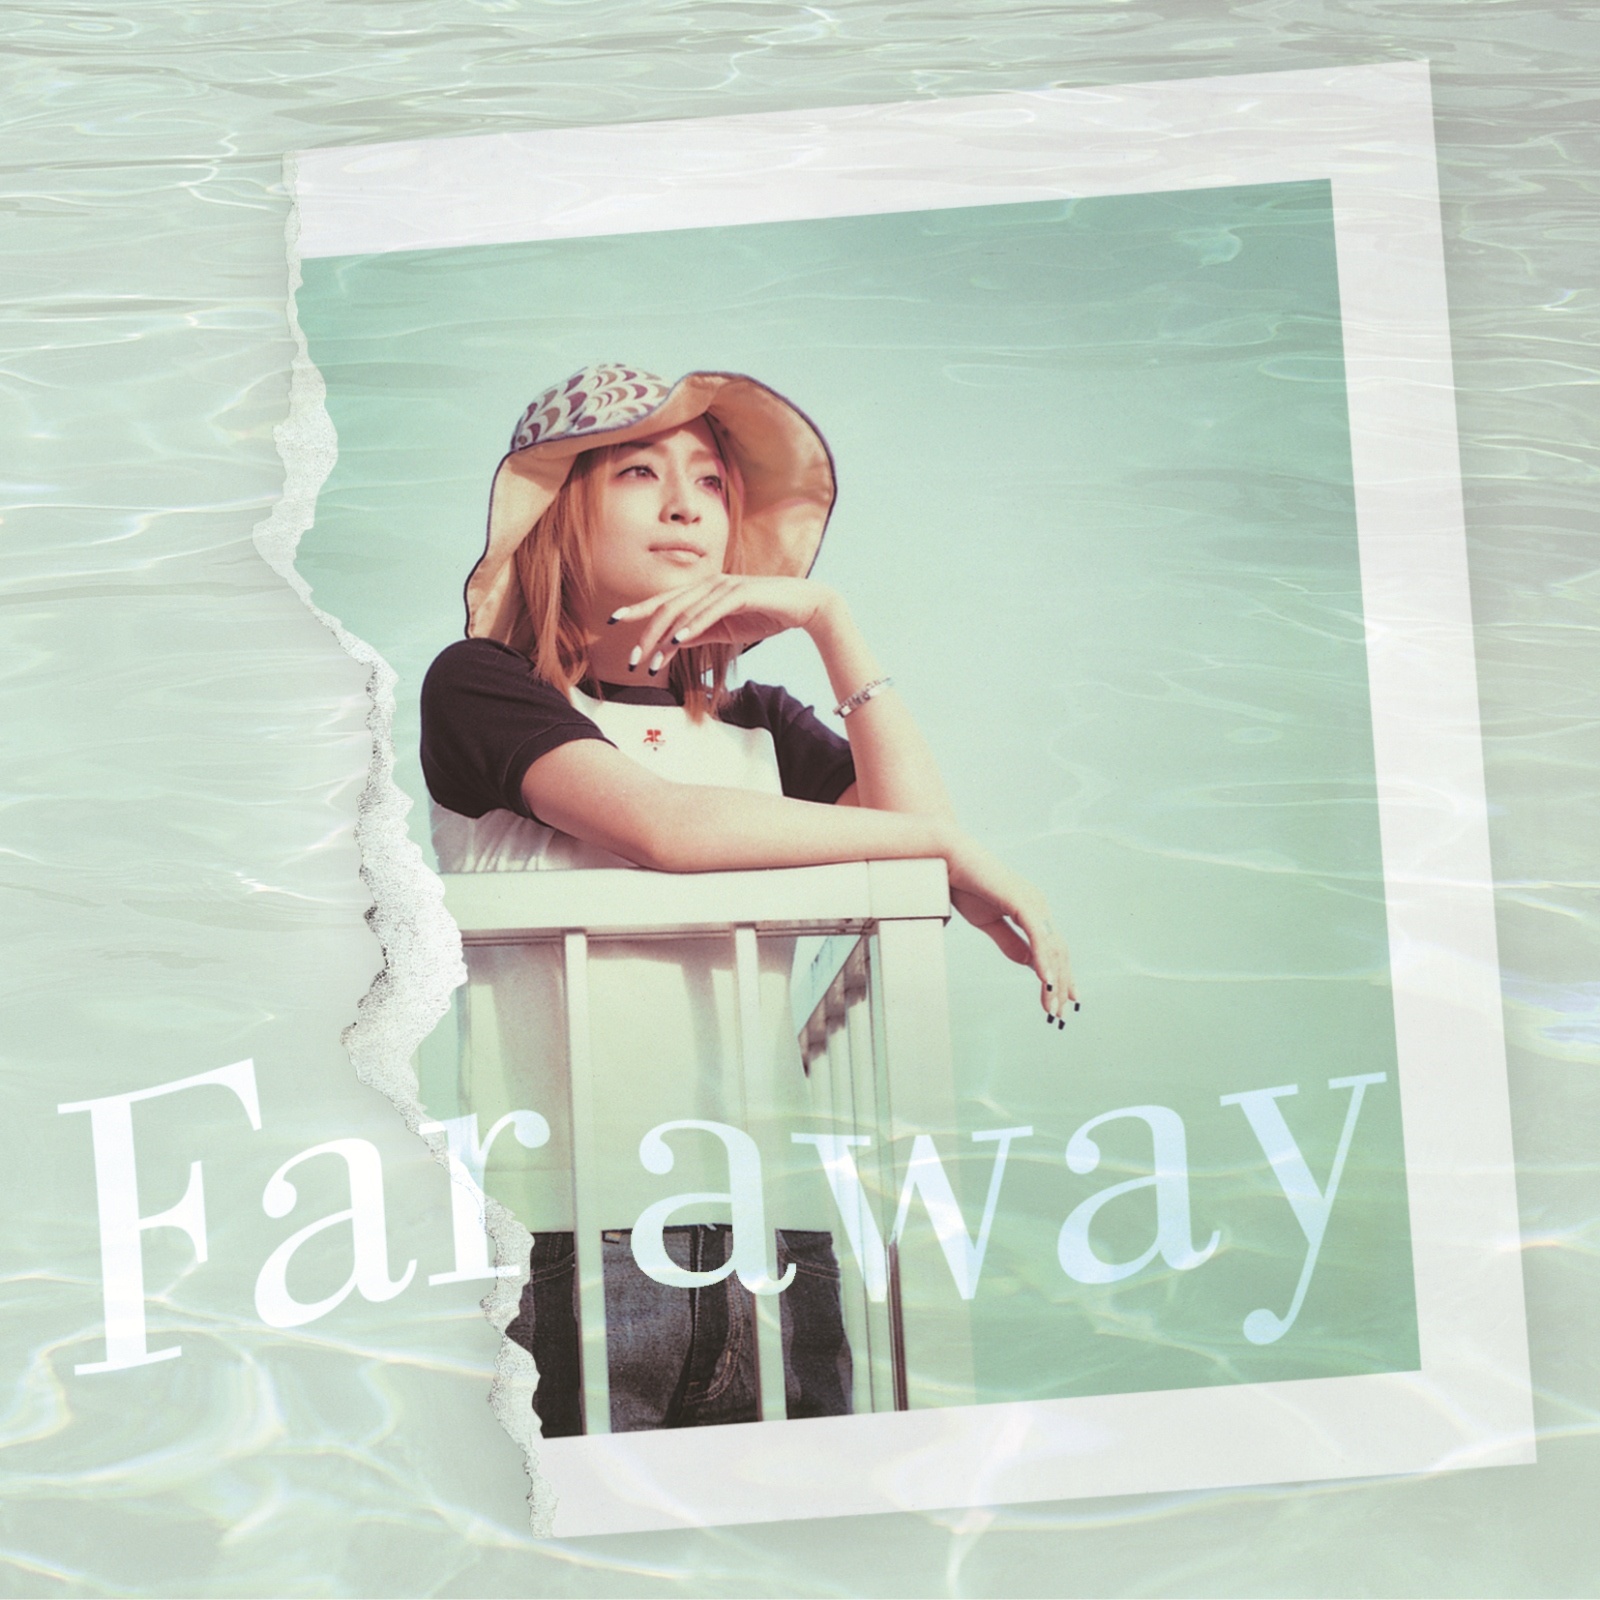 Far away - Original Mix